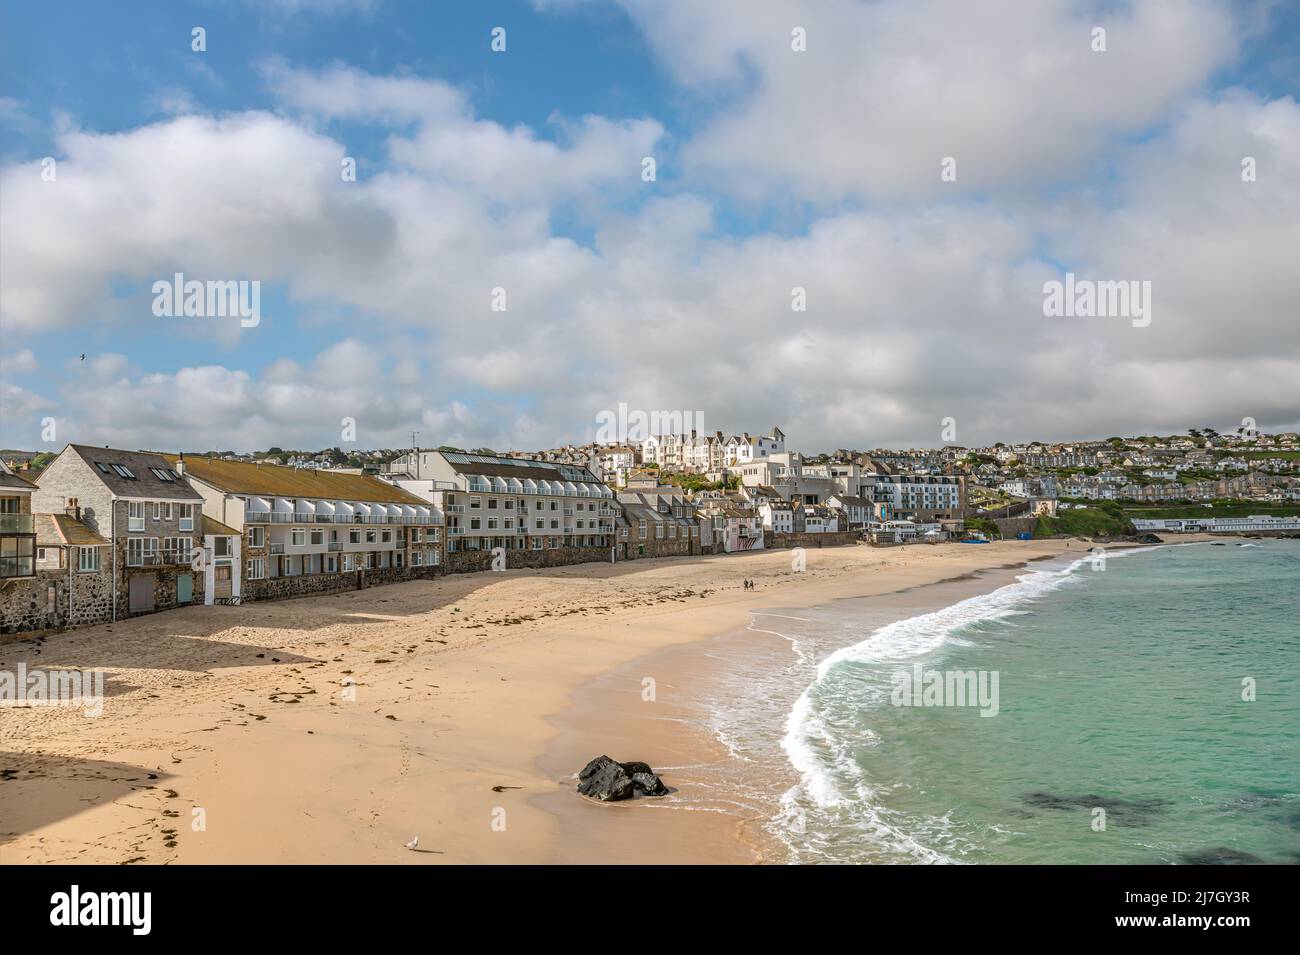 Vista en la playa de Porthmeor, St Ives, Cornwall, Inglaterra, Reino Unido Foto de stock